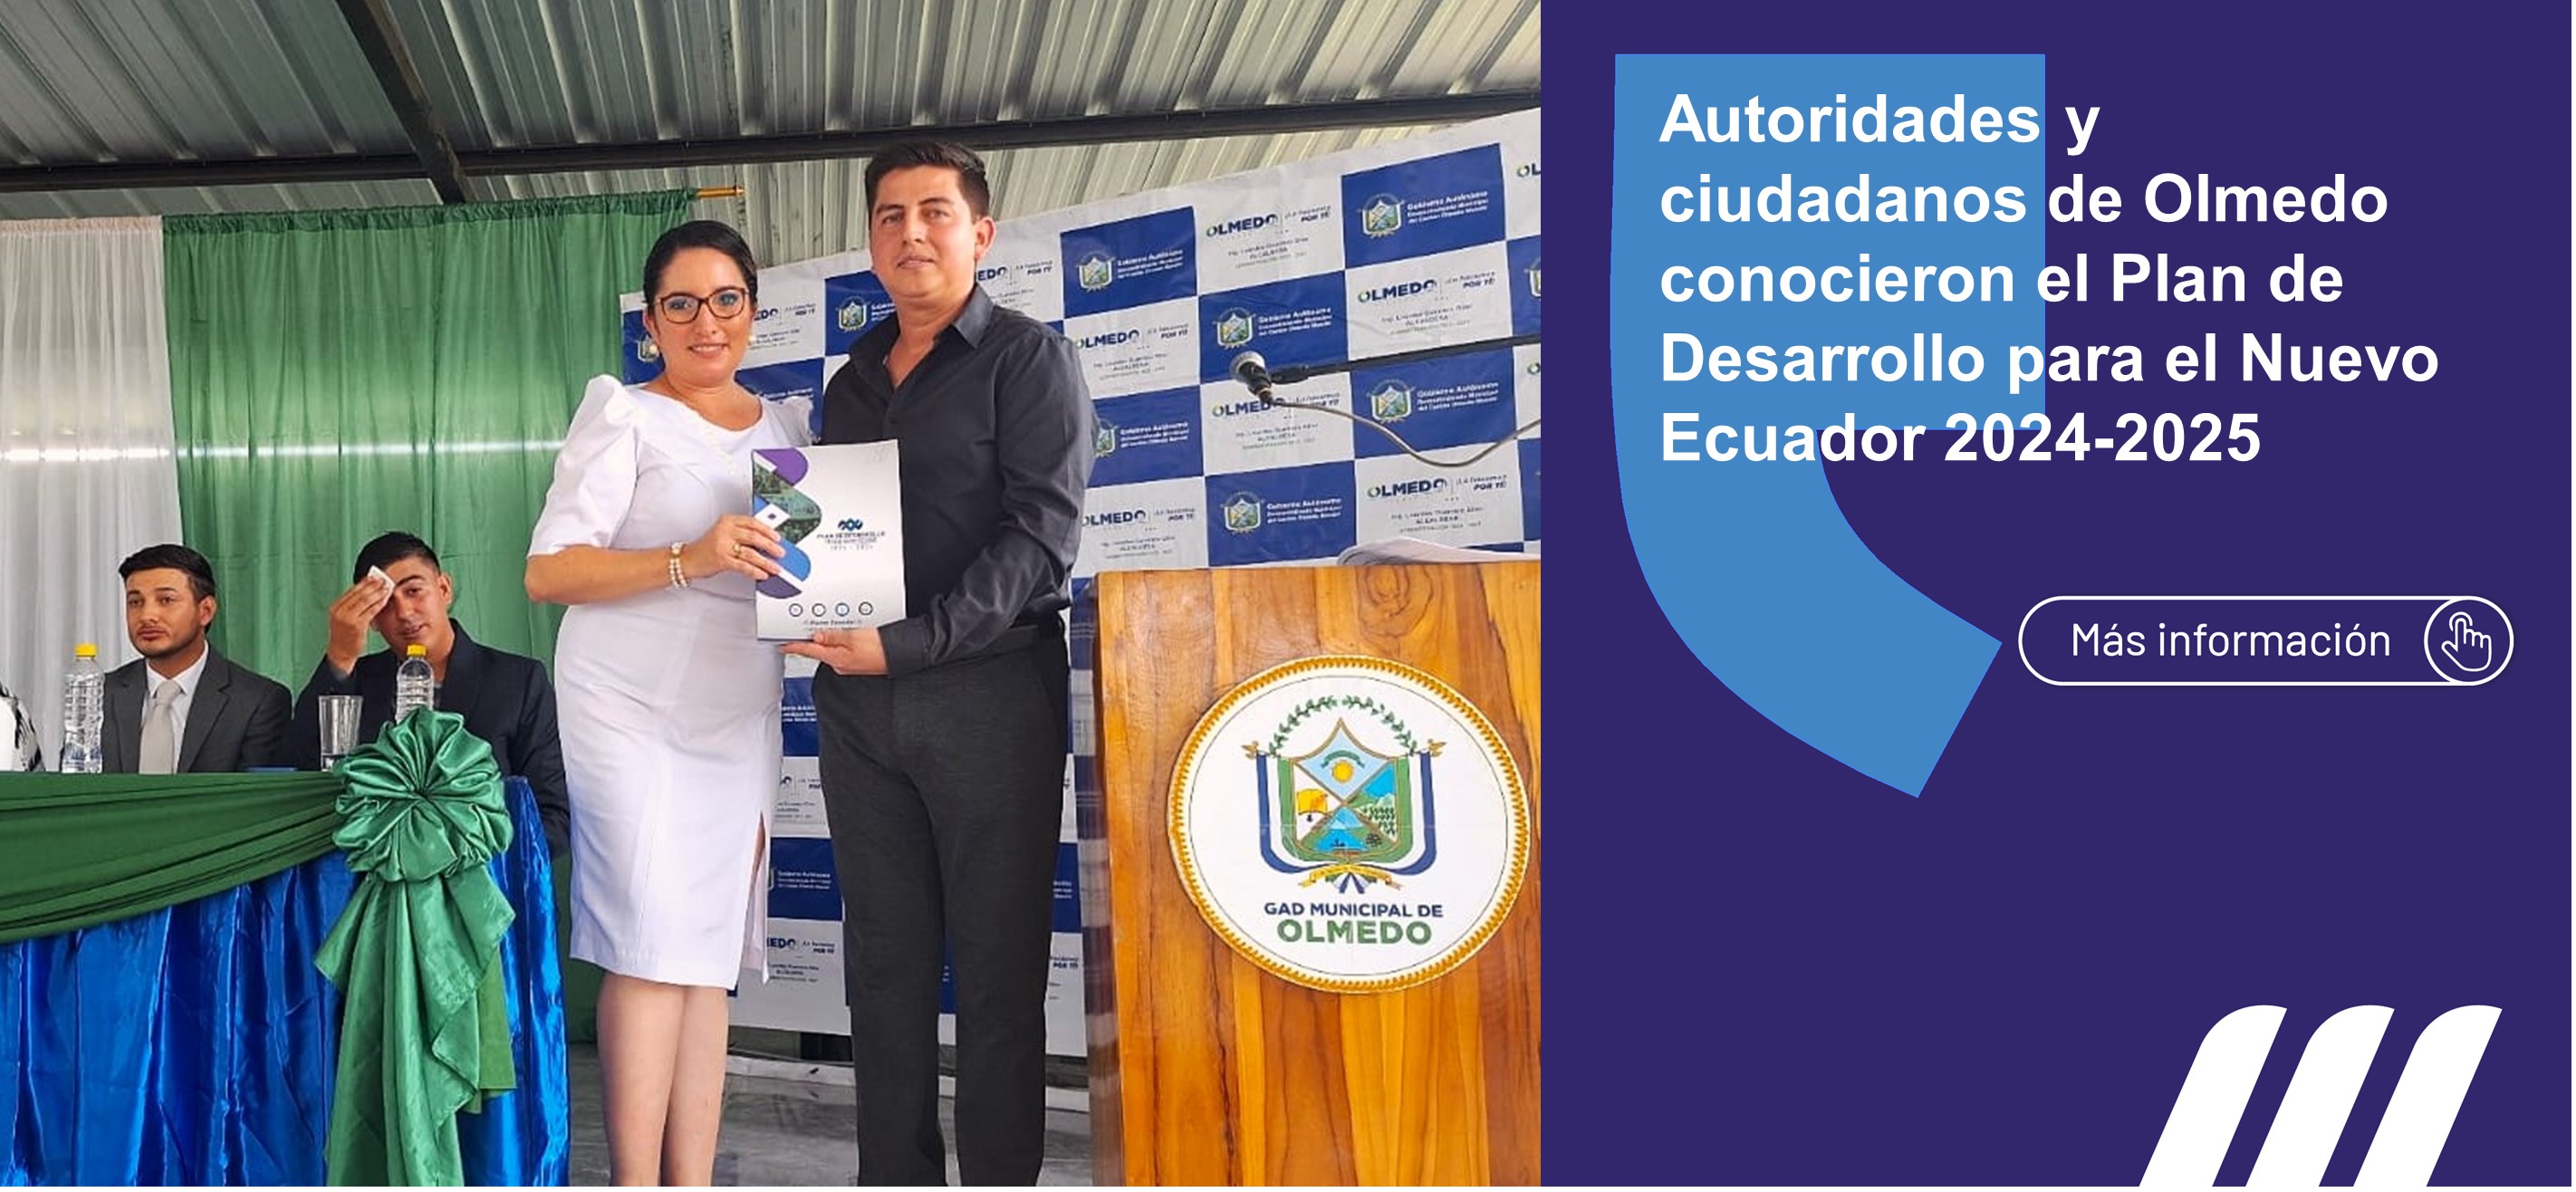 La Dirección Zonal de Planificación 4 realizó la entrega formal del Plan de Desarrollo para el Nuevo Ecuador 2024-2025 a la alcaldesa del cantón Olmedo, Lourdes Guerrero Giler.